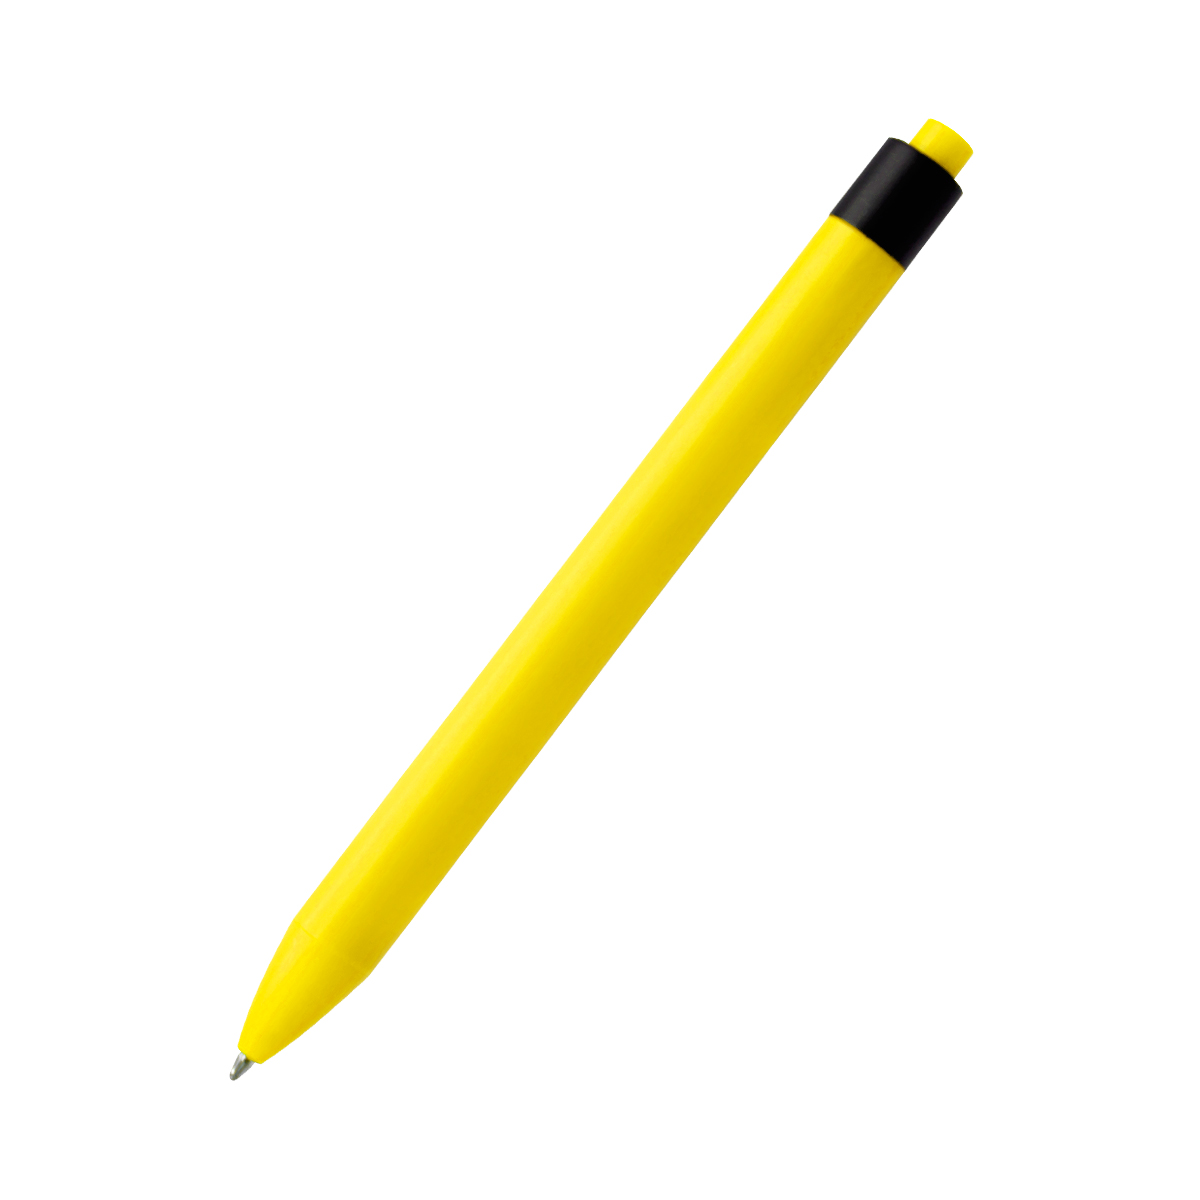 Ручка пластиковая с текстильной вставкой Kan, желтая (Фото)